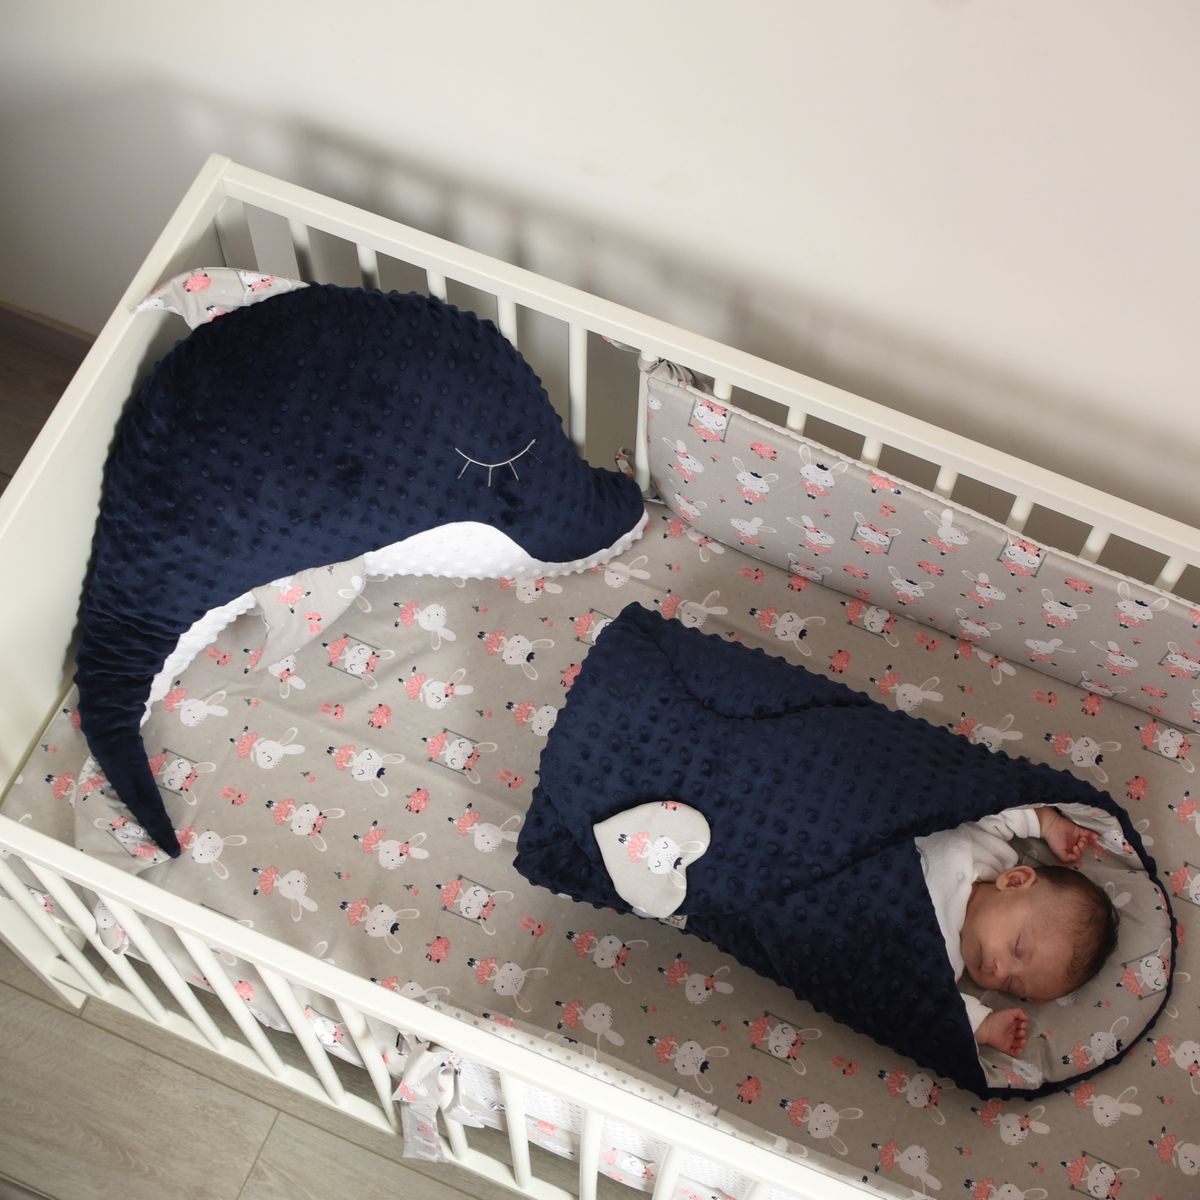 Achetez Sevira Kids Oreiller bébé anti tête plate en coton et minky, chez   pour 30.99 EUR. EAN: 3700970546863